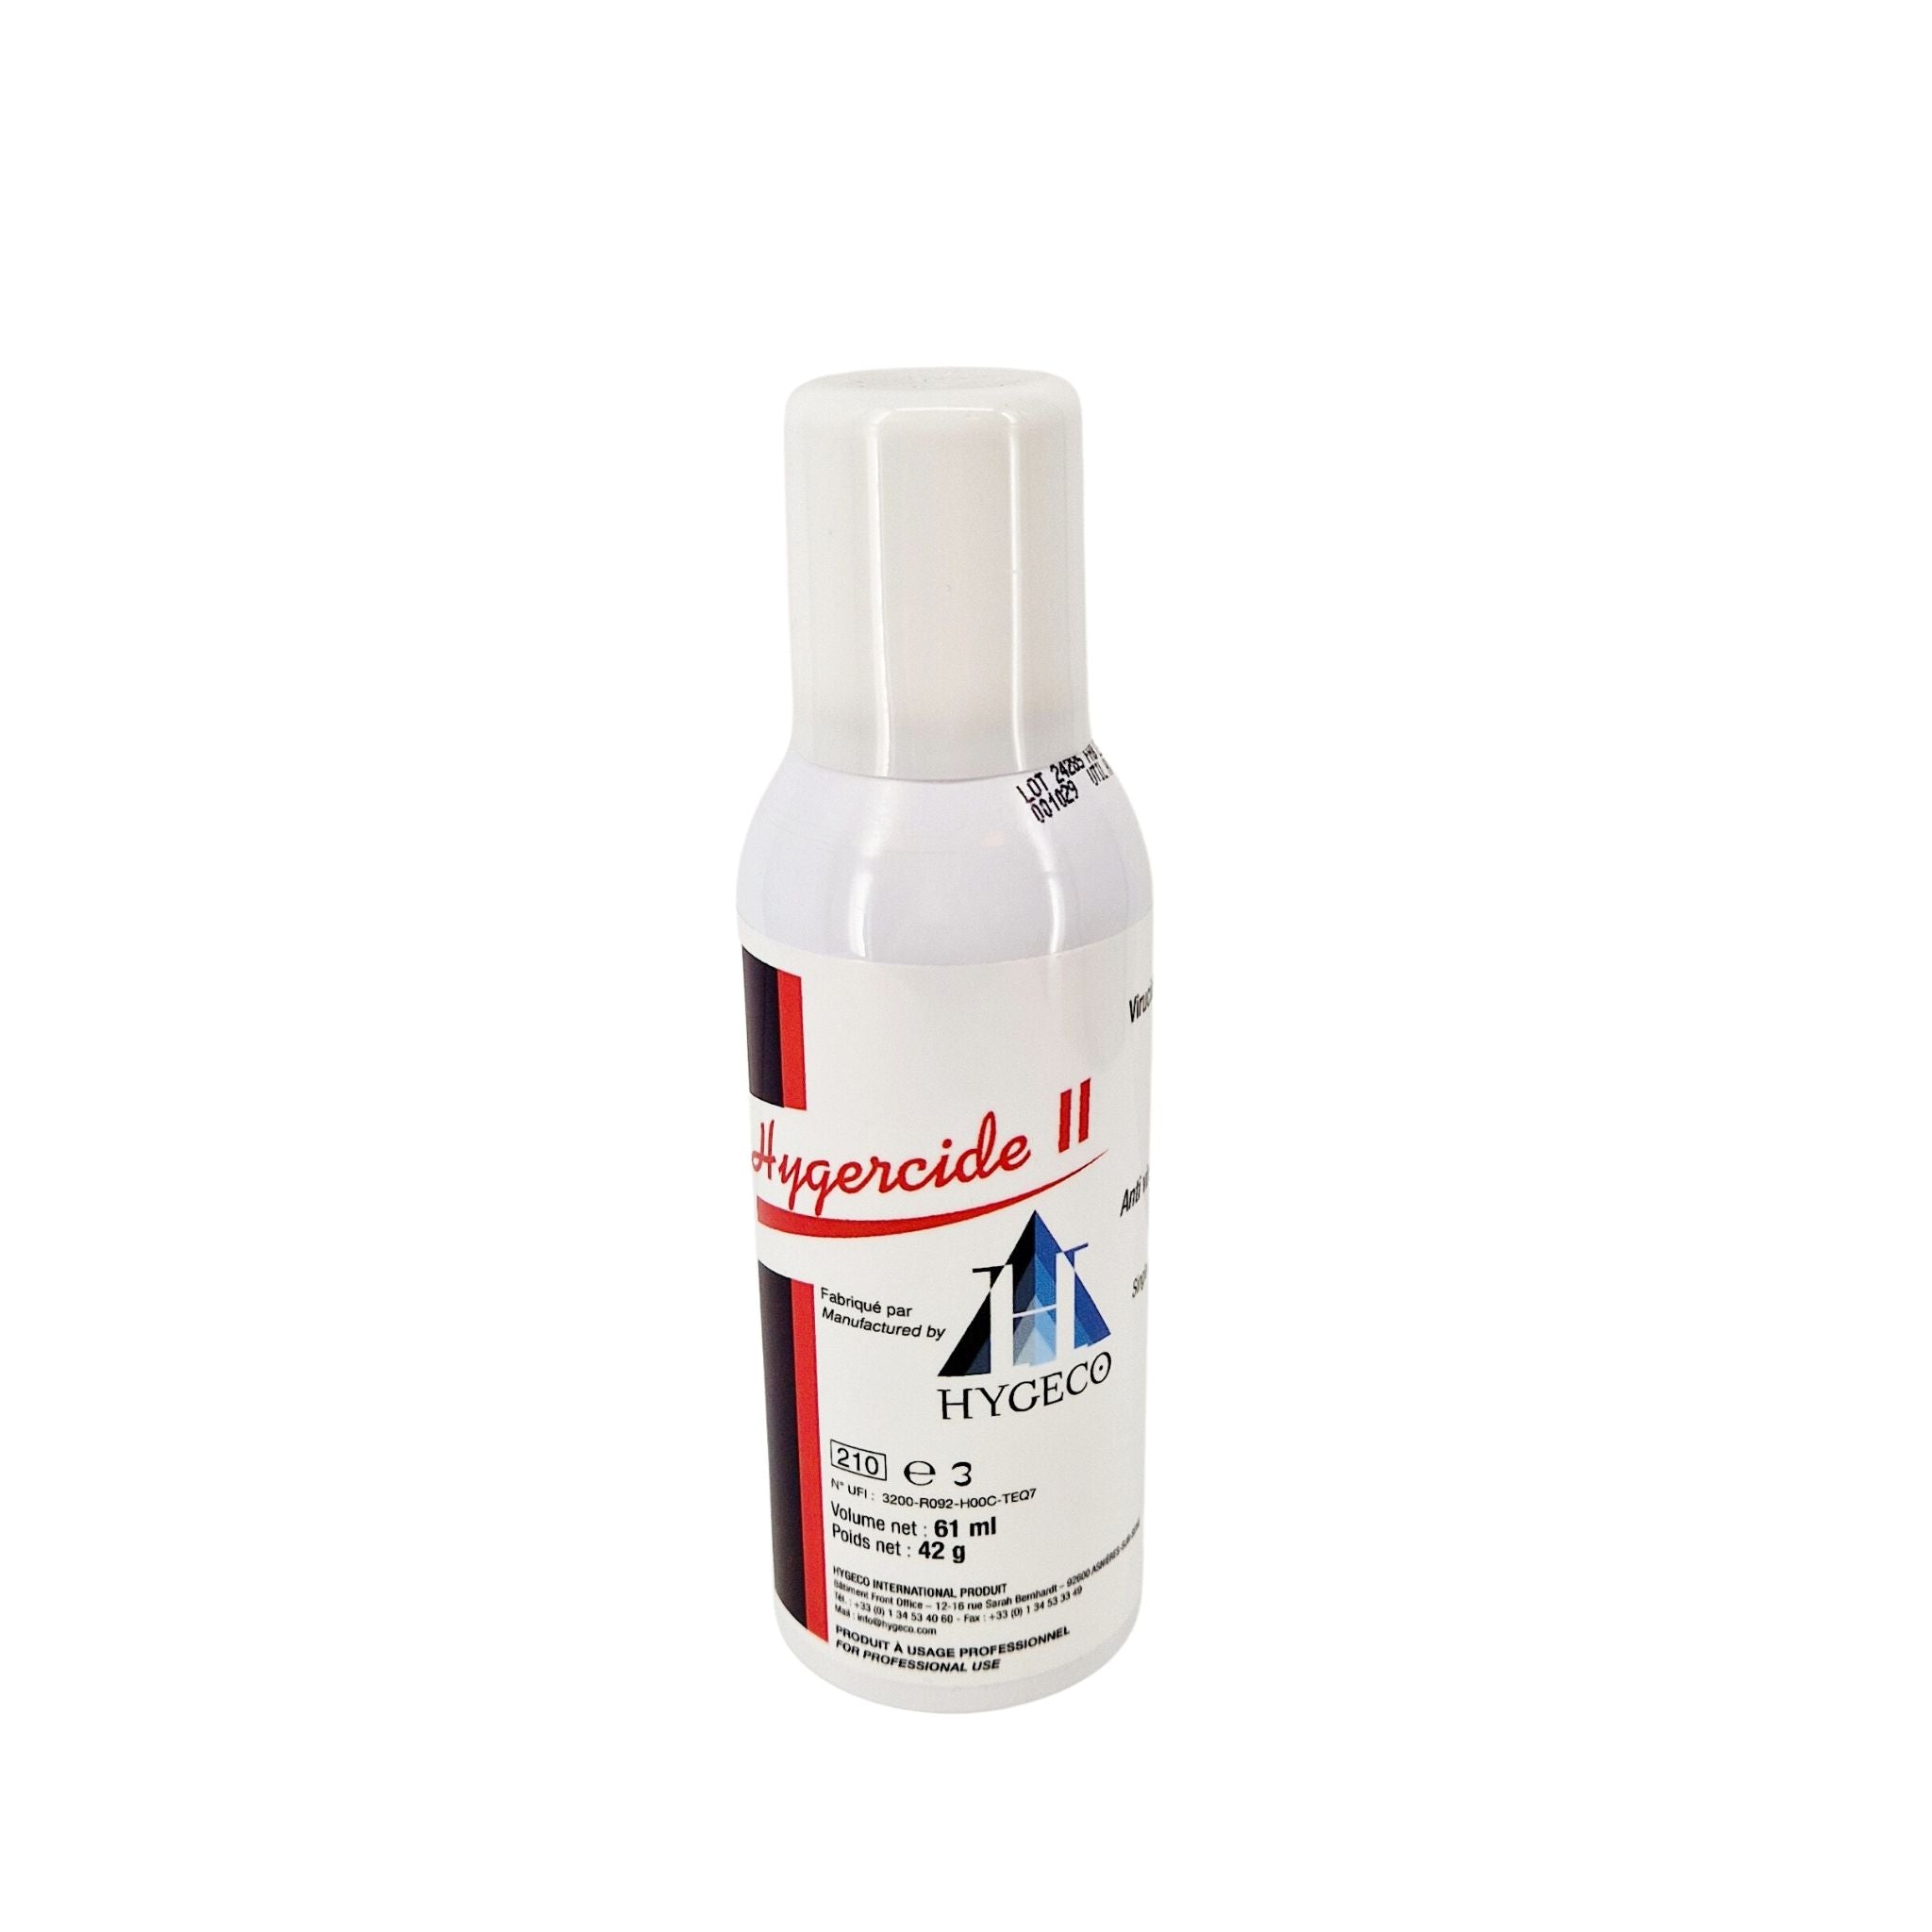 Hygercide II, 61 ml spray can